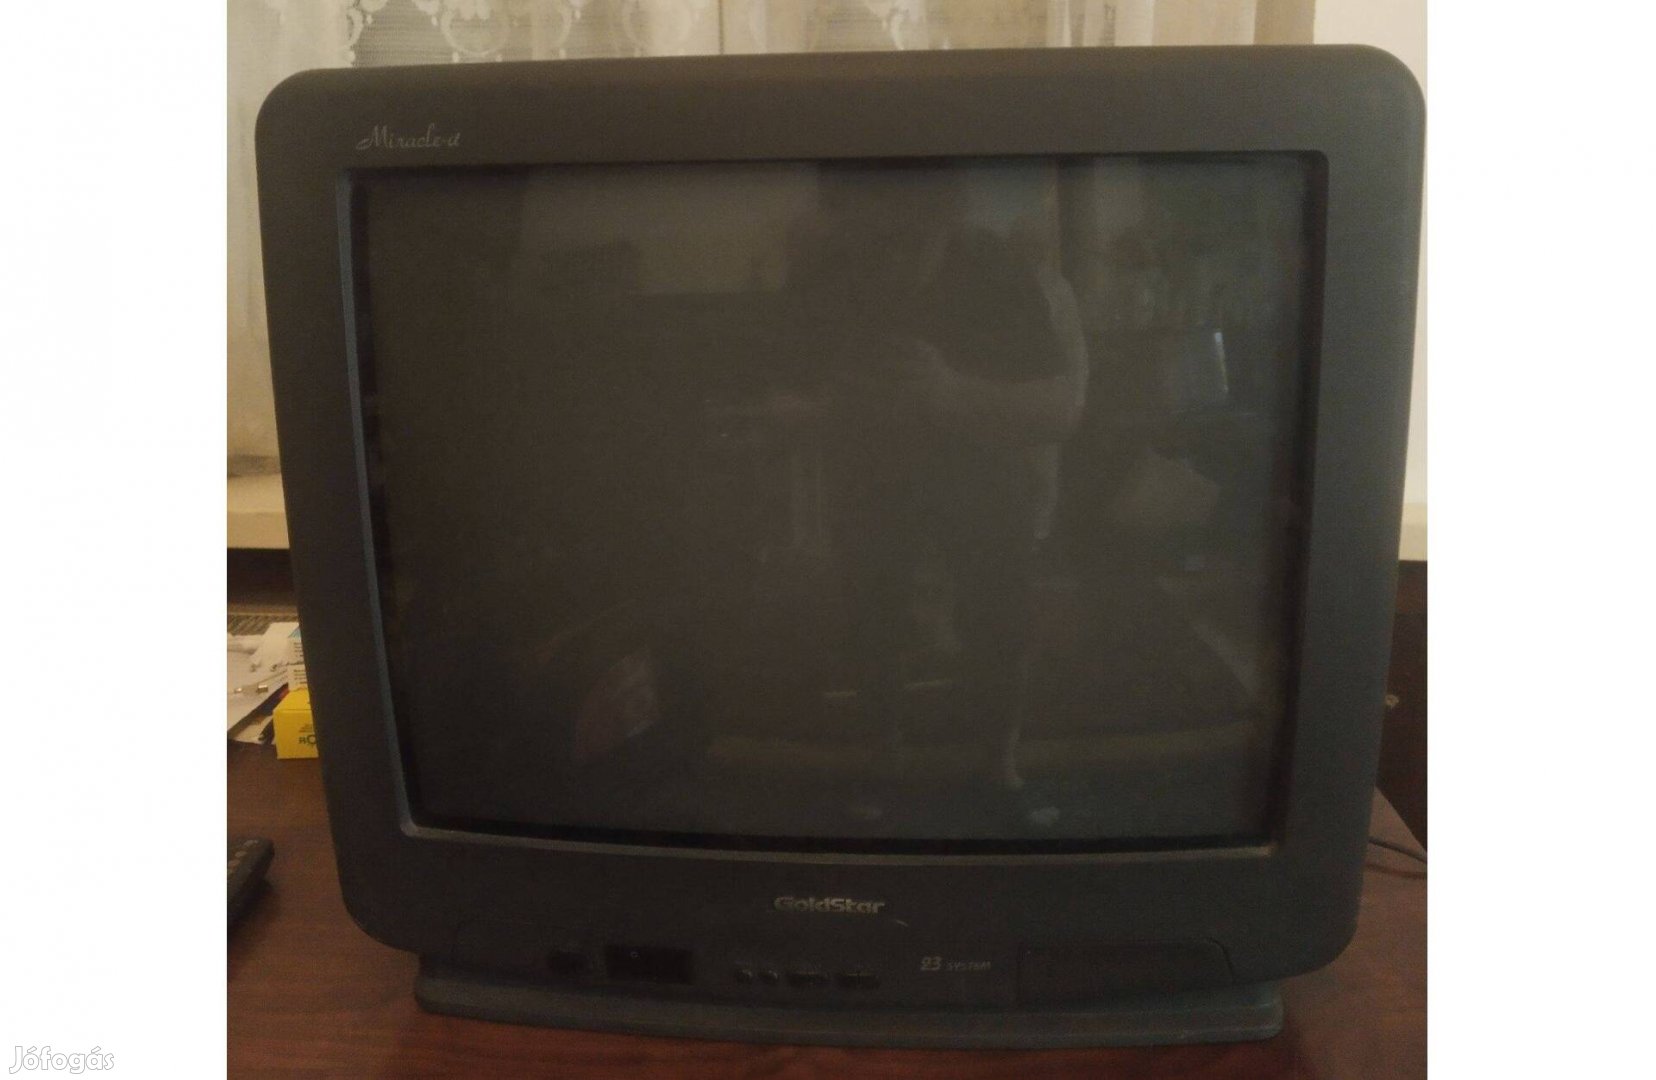 Olcsón eladó régi Goldstar TV (52 cm-es képátló)!